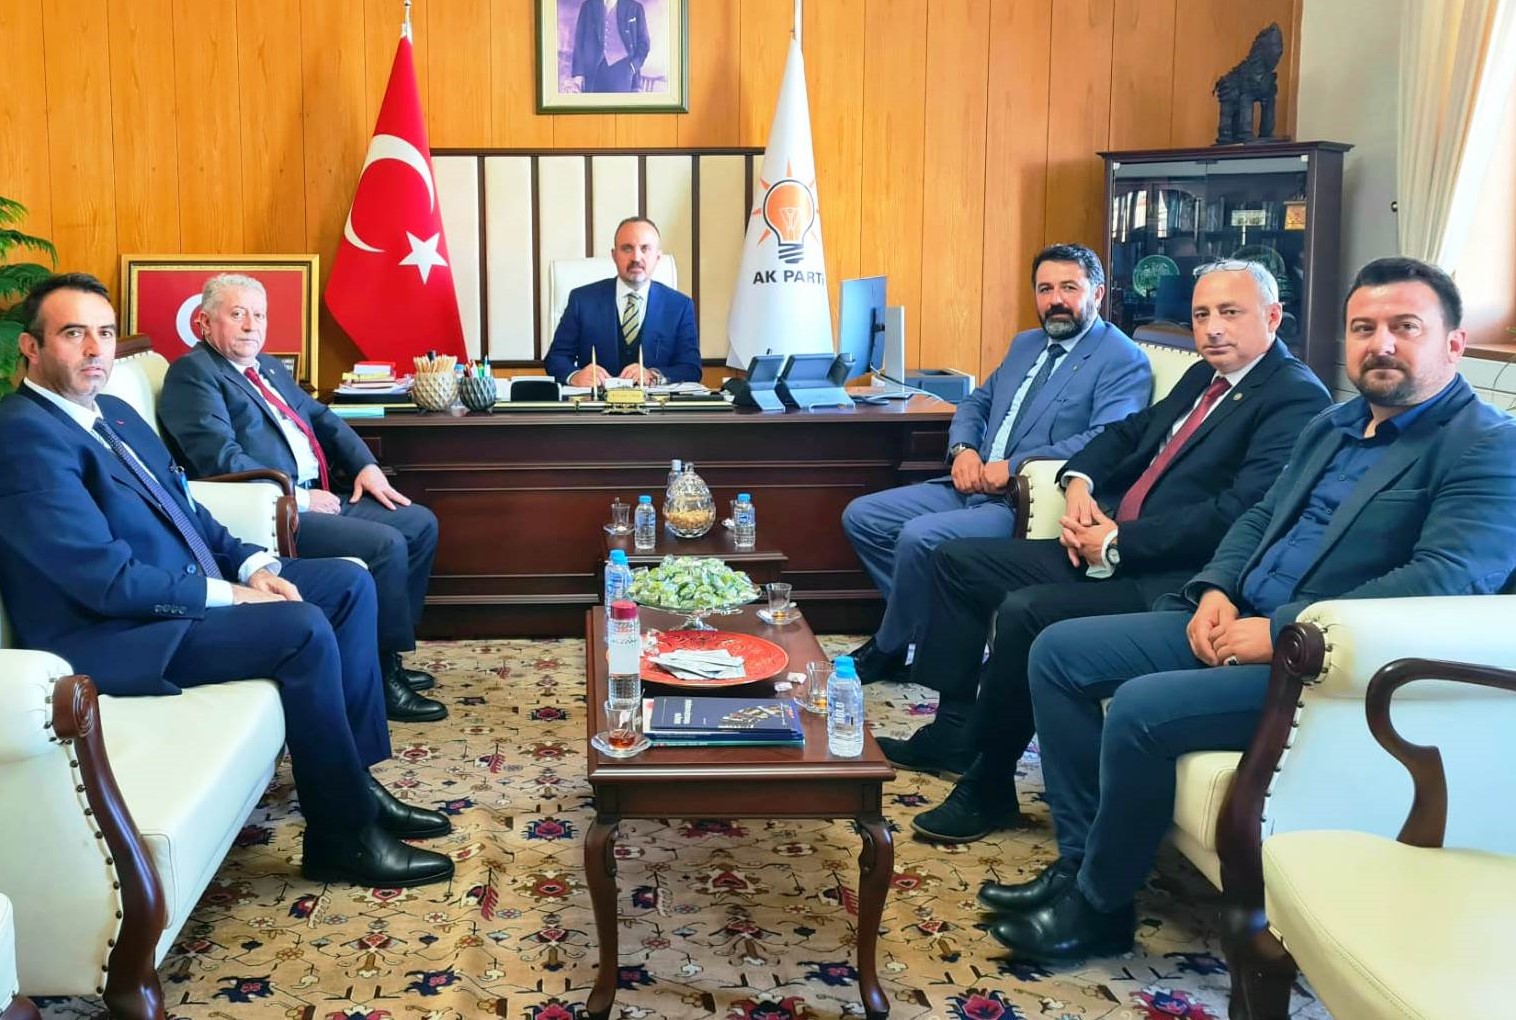 AK Parti Grup Başkanvekili ve Çanakkale Milletvekili Bülent Turan, Biga Ziraat Odası Yönetim Kurulu Başkanı Güray Ergün'ü ve beraberindeki heyeti TBMM'de misafir etti.